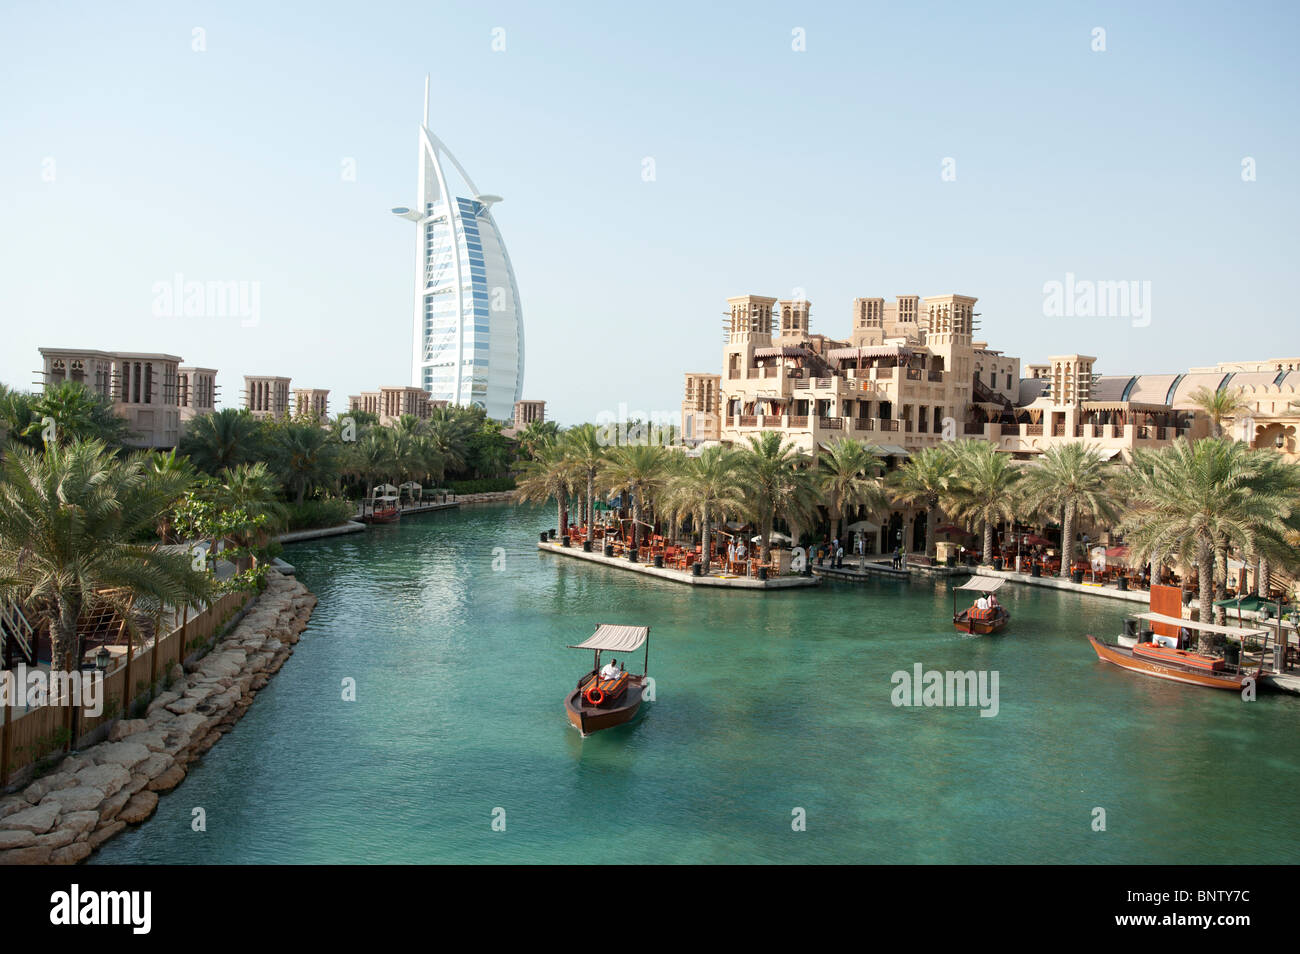 Il Burj Al Arab hotel visto da canali di acqua del Madinat Jumeirah hotel a Dubai Emirati Arabi Uniti Foto Stock